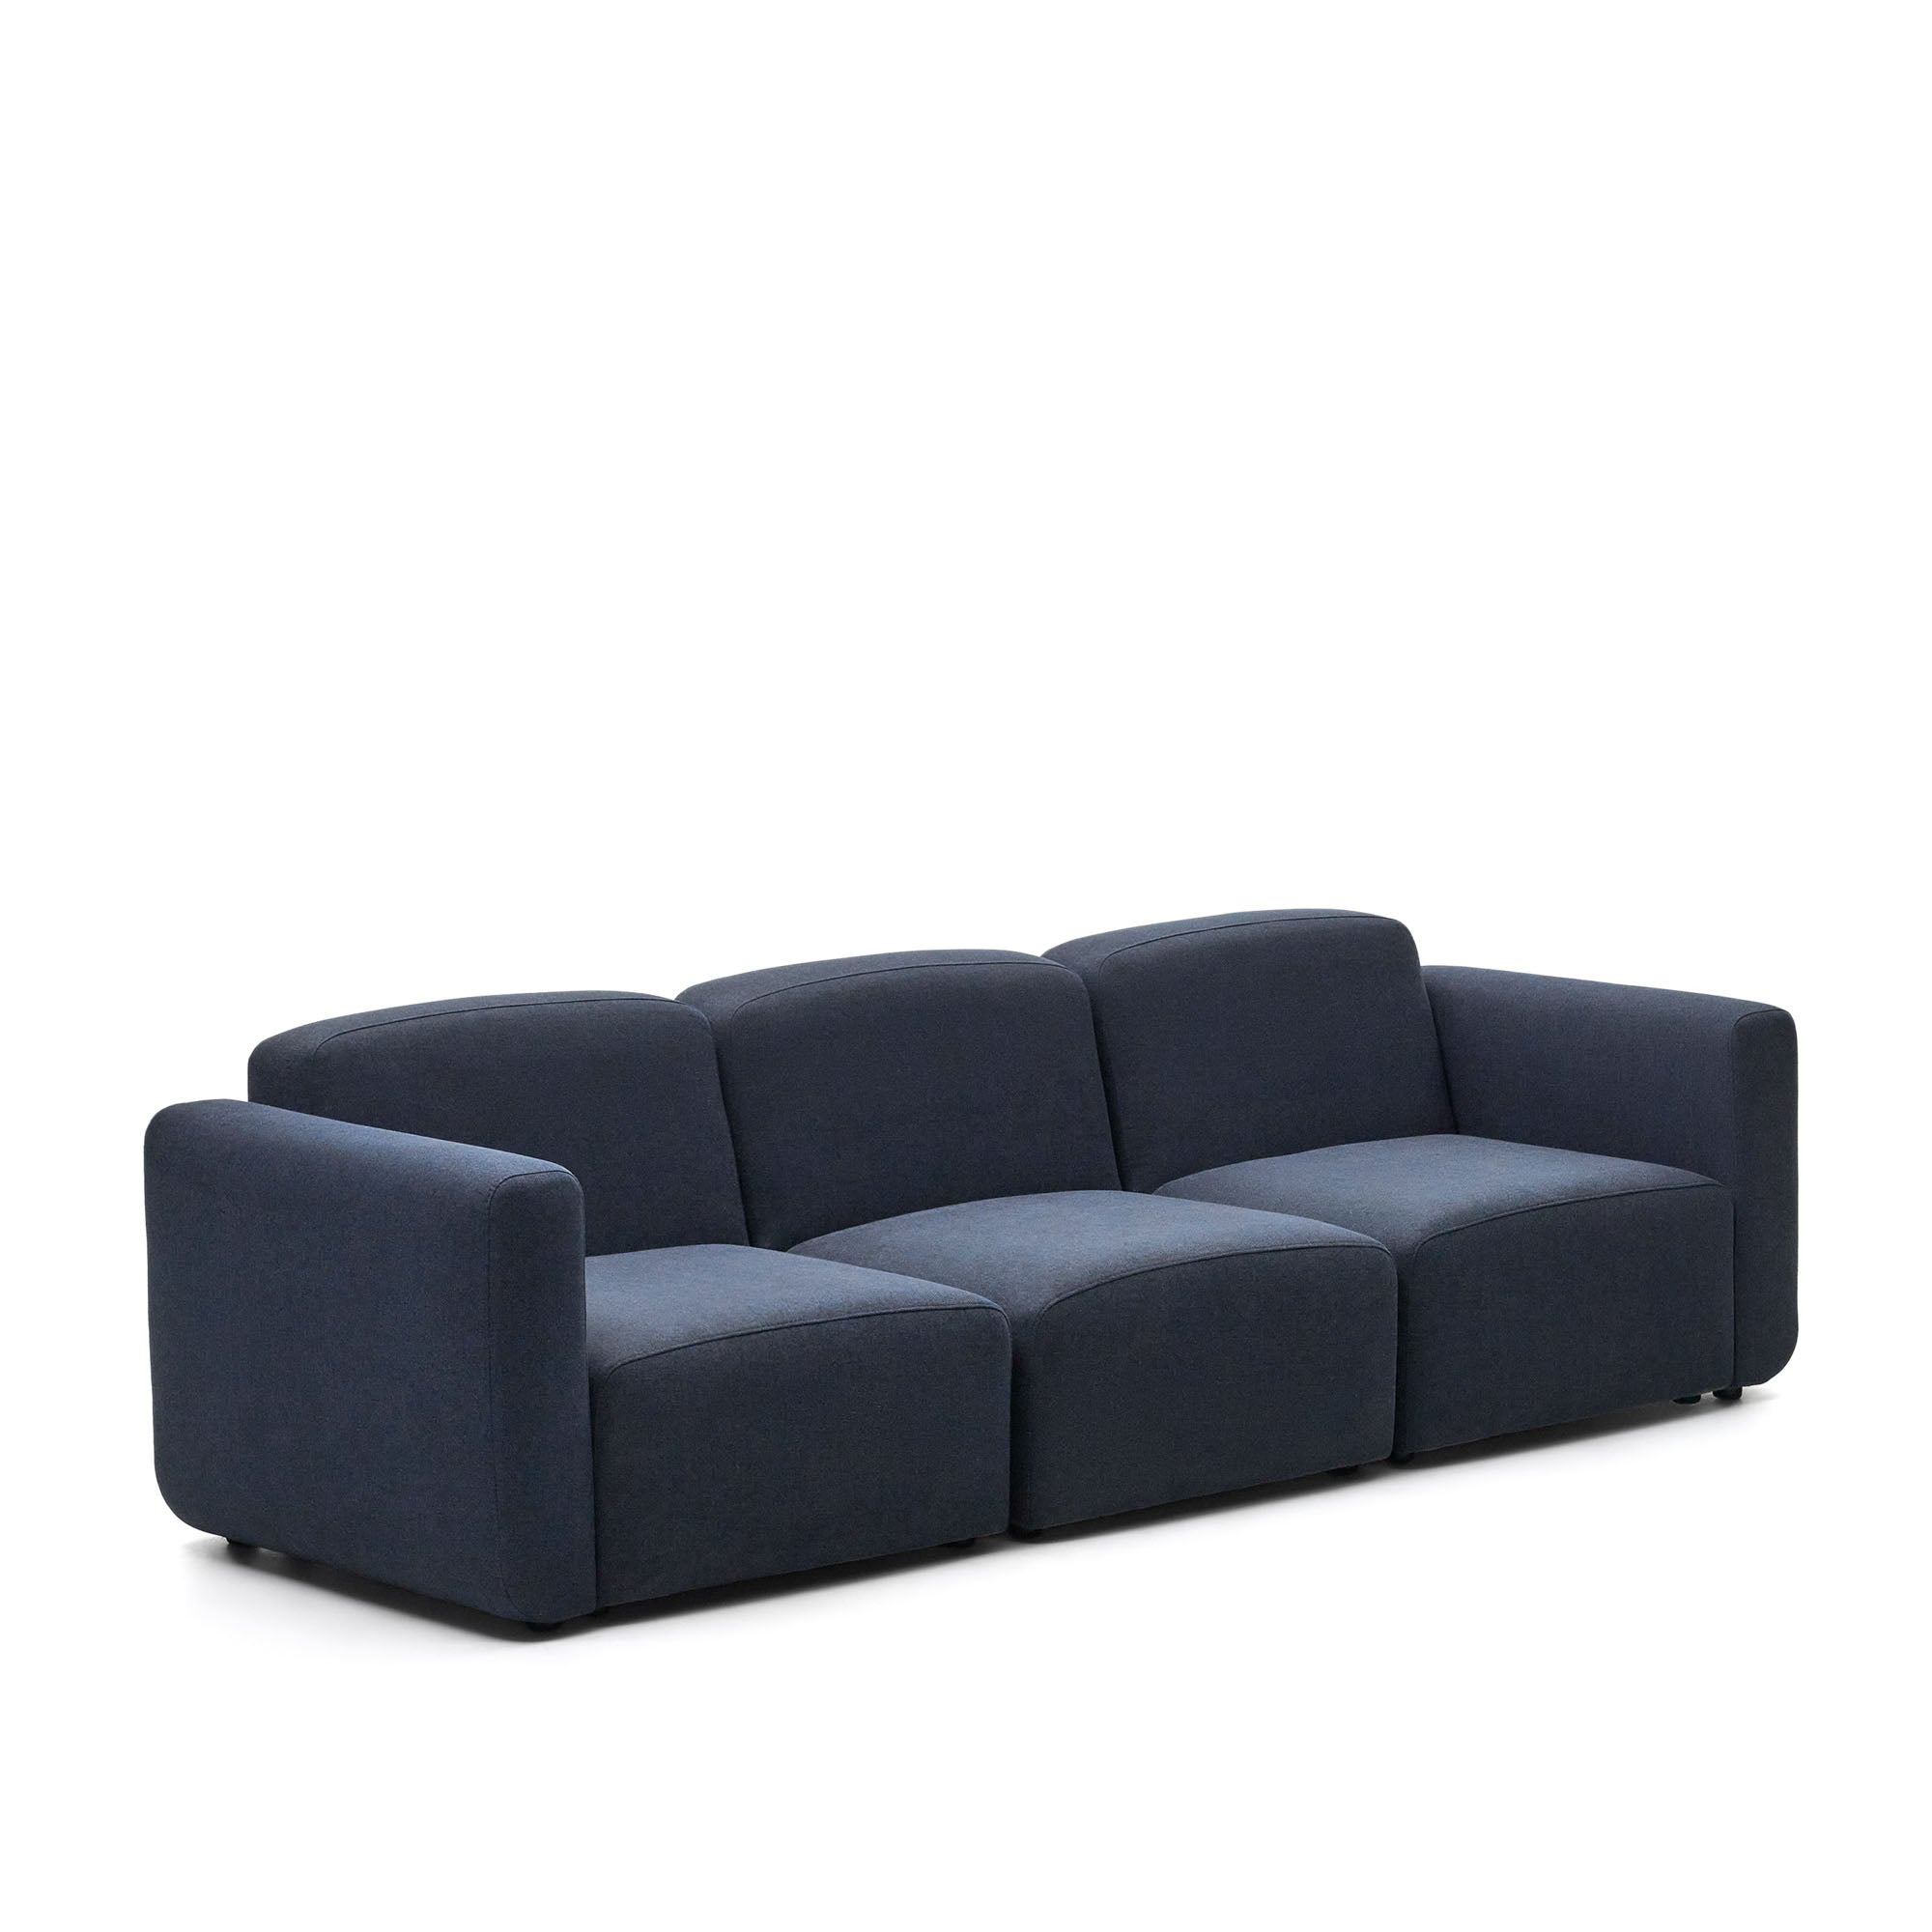 Neom 3 személyes moduláris kanapé kék színben, 263 cm